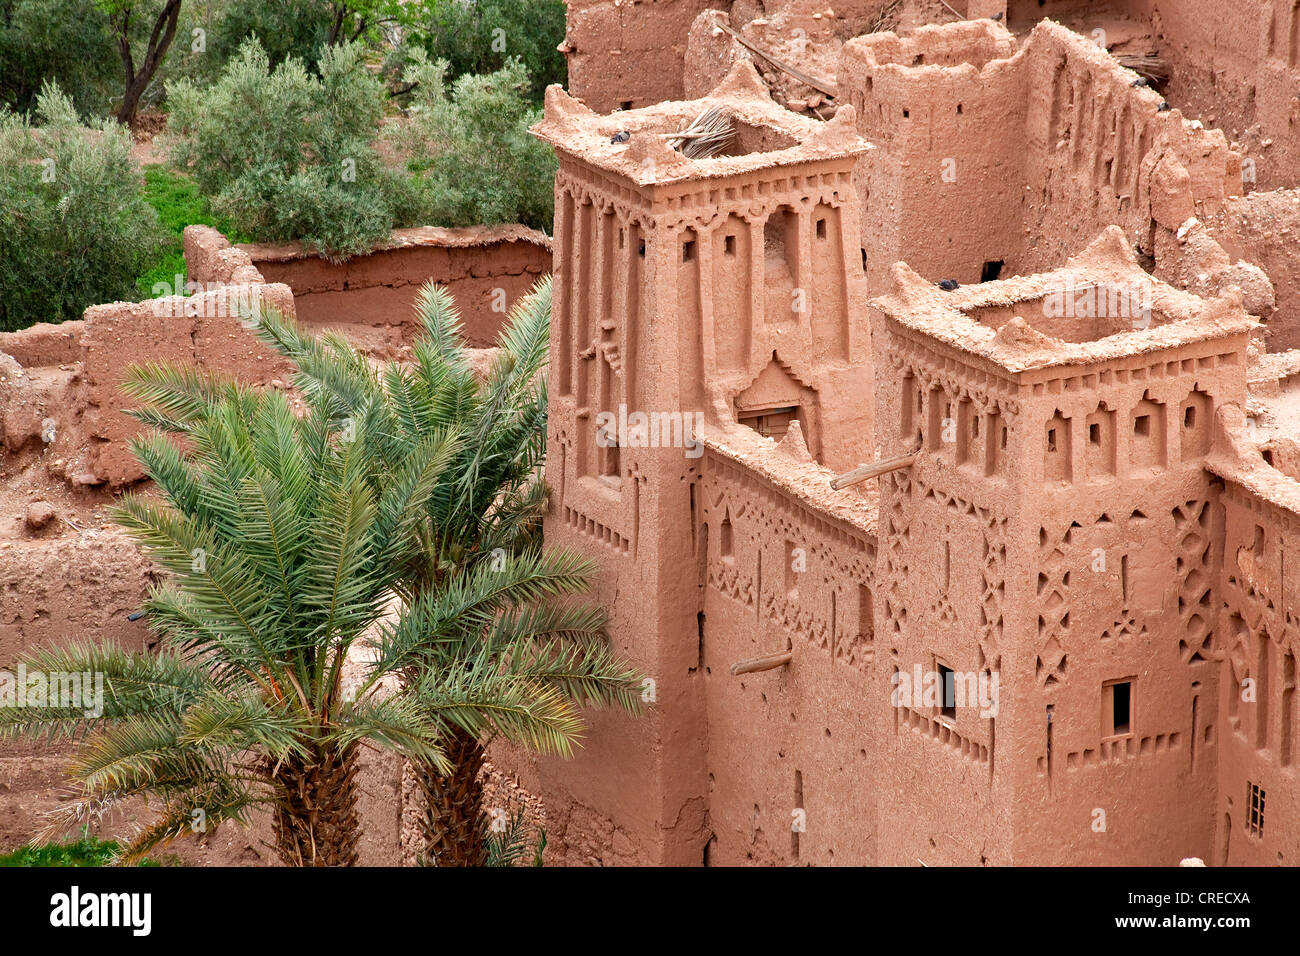 L'architecture d'adobe traditionnel berbère, la Kasbah à Aït Benhaddou, du patrimoine culturel mondial de l'UNESCO, le Maroc, l'Afrique Banque D'Images